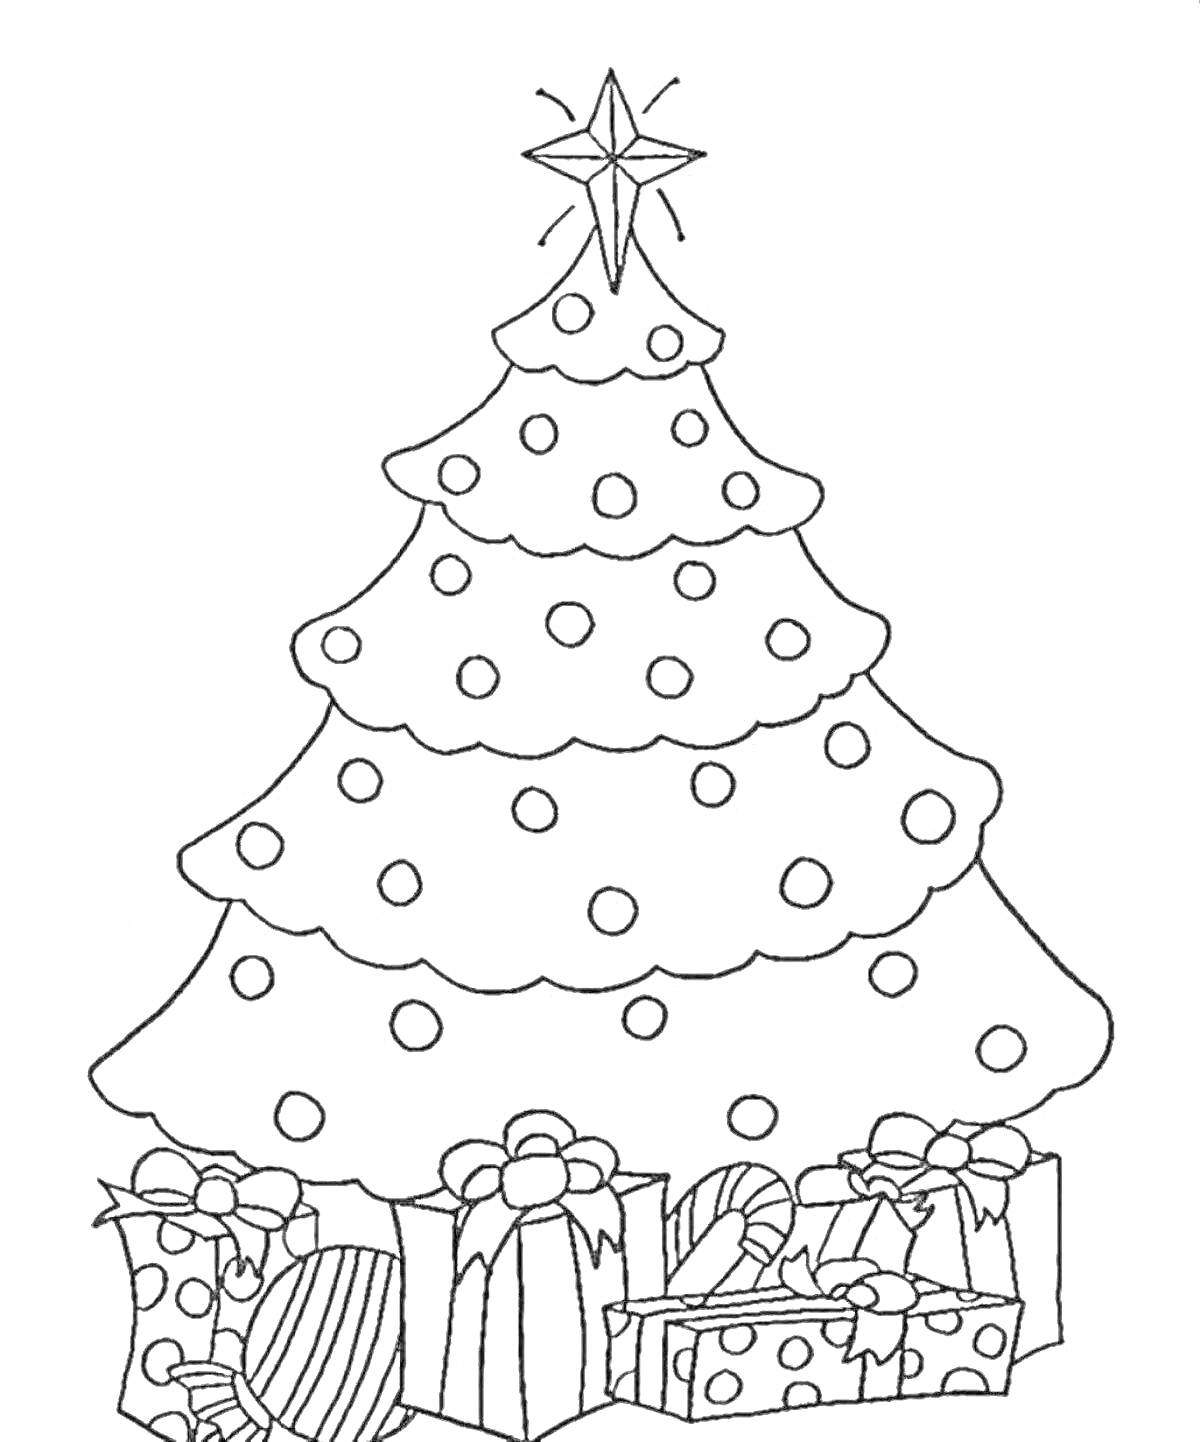 Новогодняя елка с игрушками, звездой на вершине и подарками под елкой